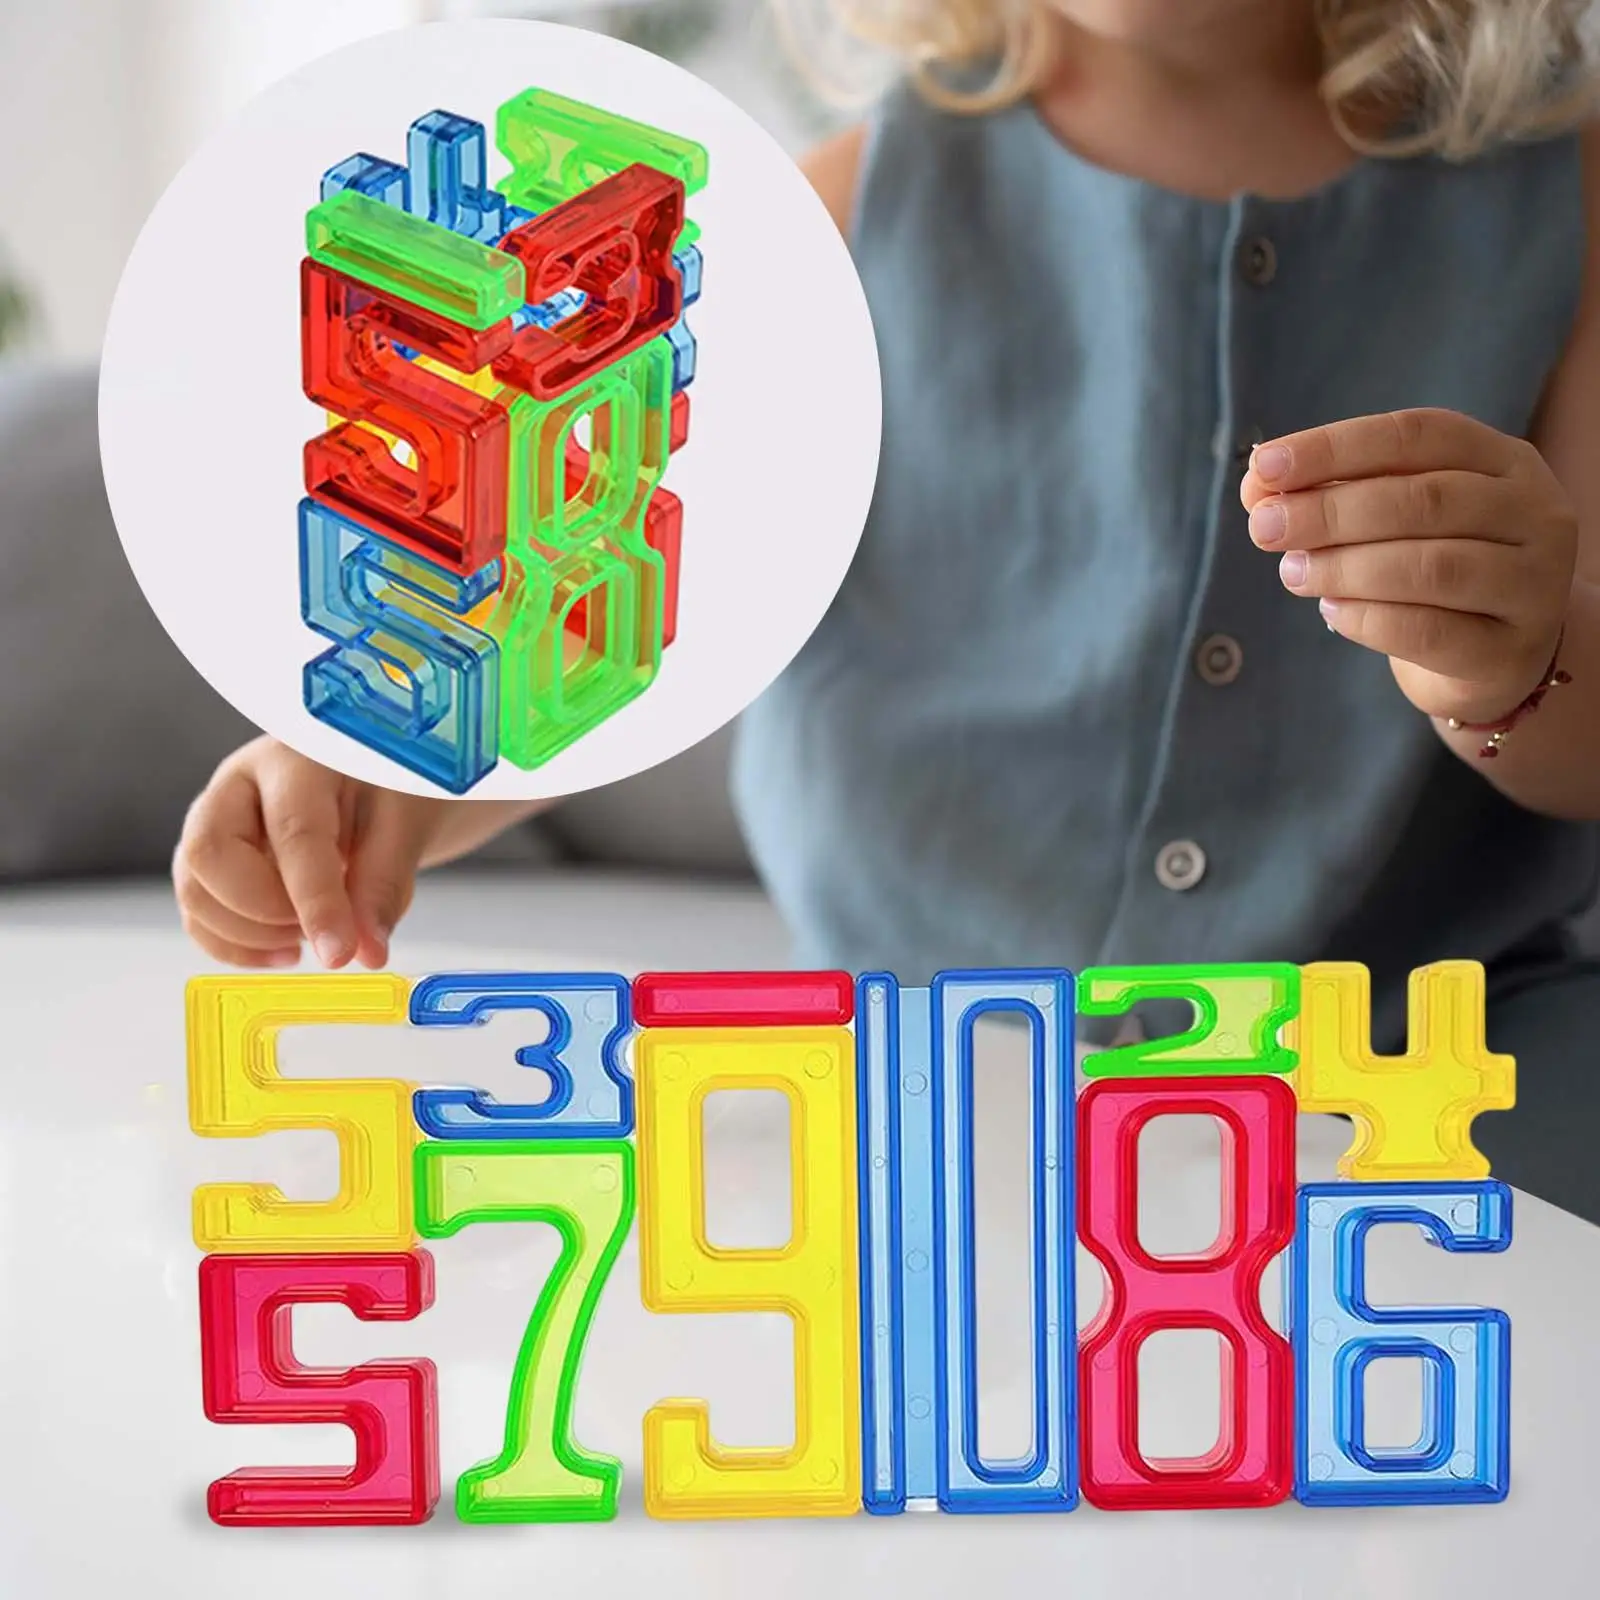 

Строительные блоки с цифрами, математические цифровые игрушки, манипуляторы, память, математика для игр